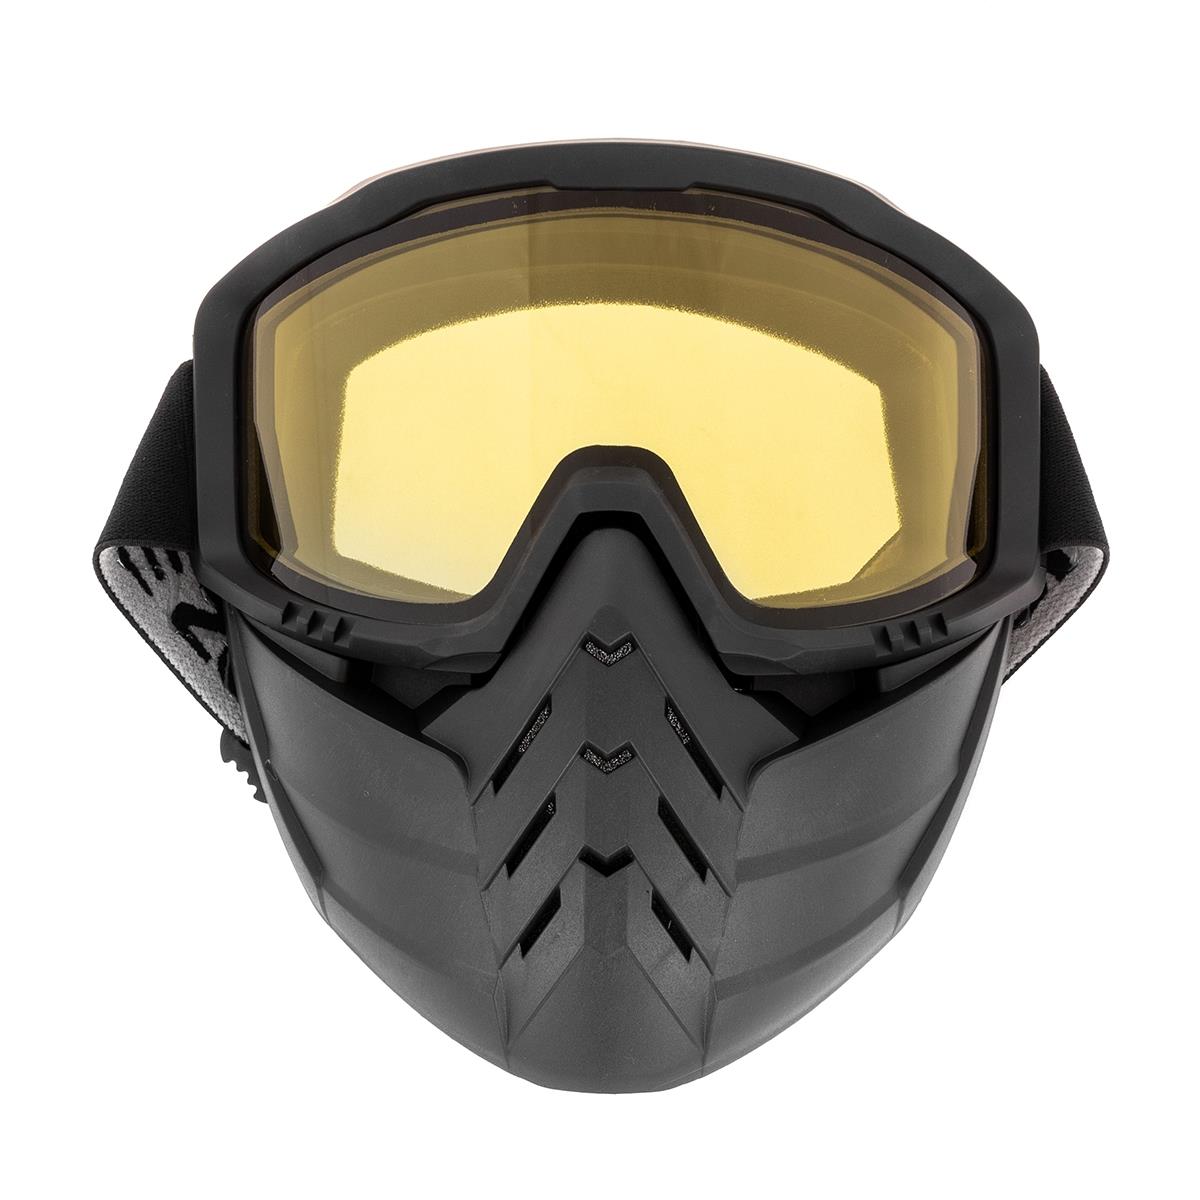 Маска снегоходная HS-MT-012-Y-2 Helios очки маска для езды на мототехнике стекло тонированое хамелеон ом 2